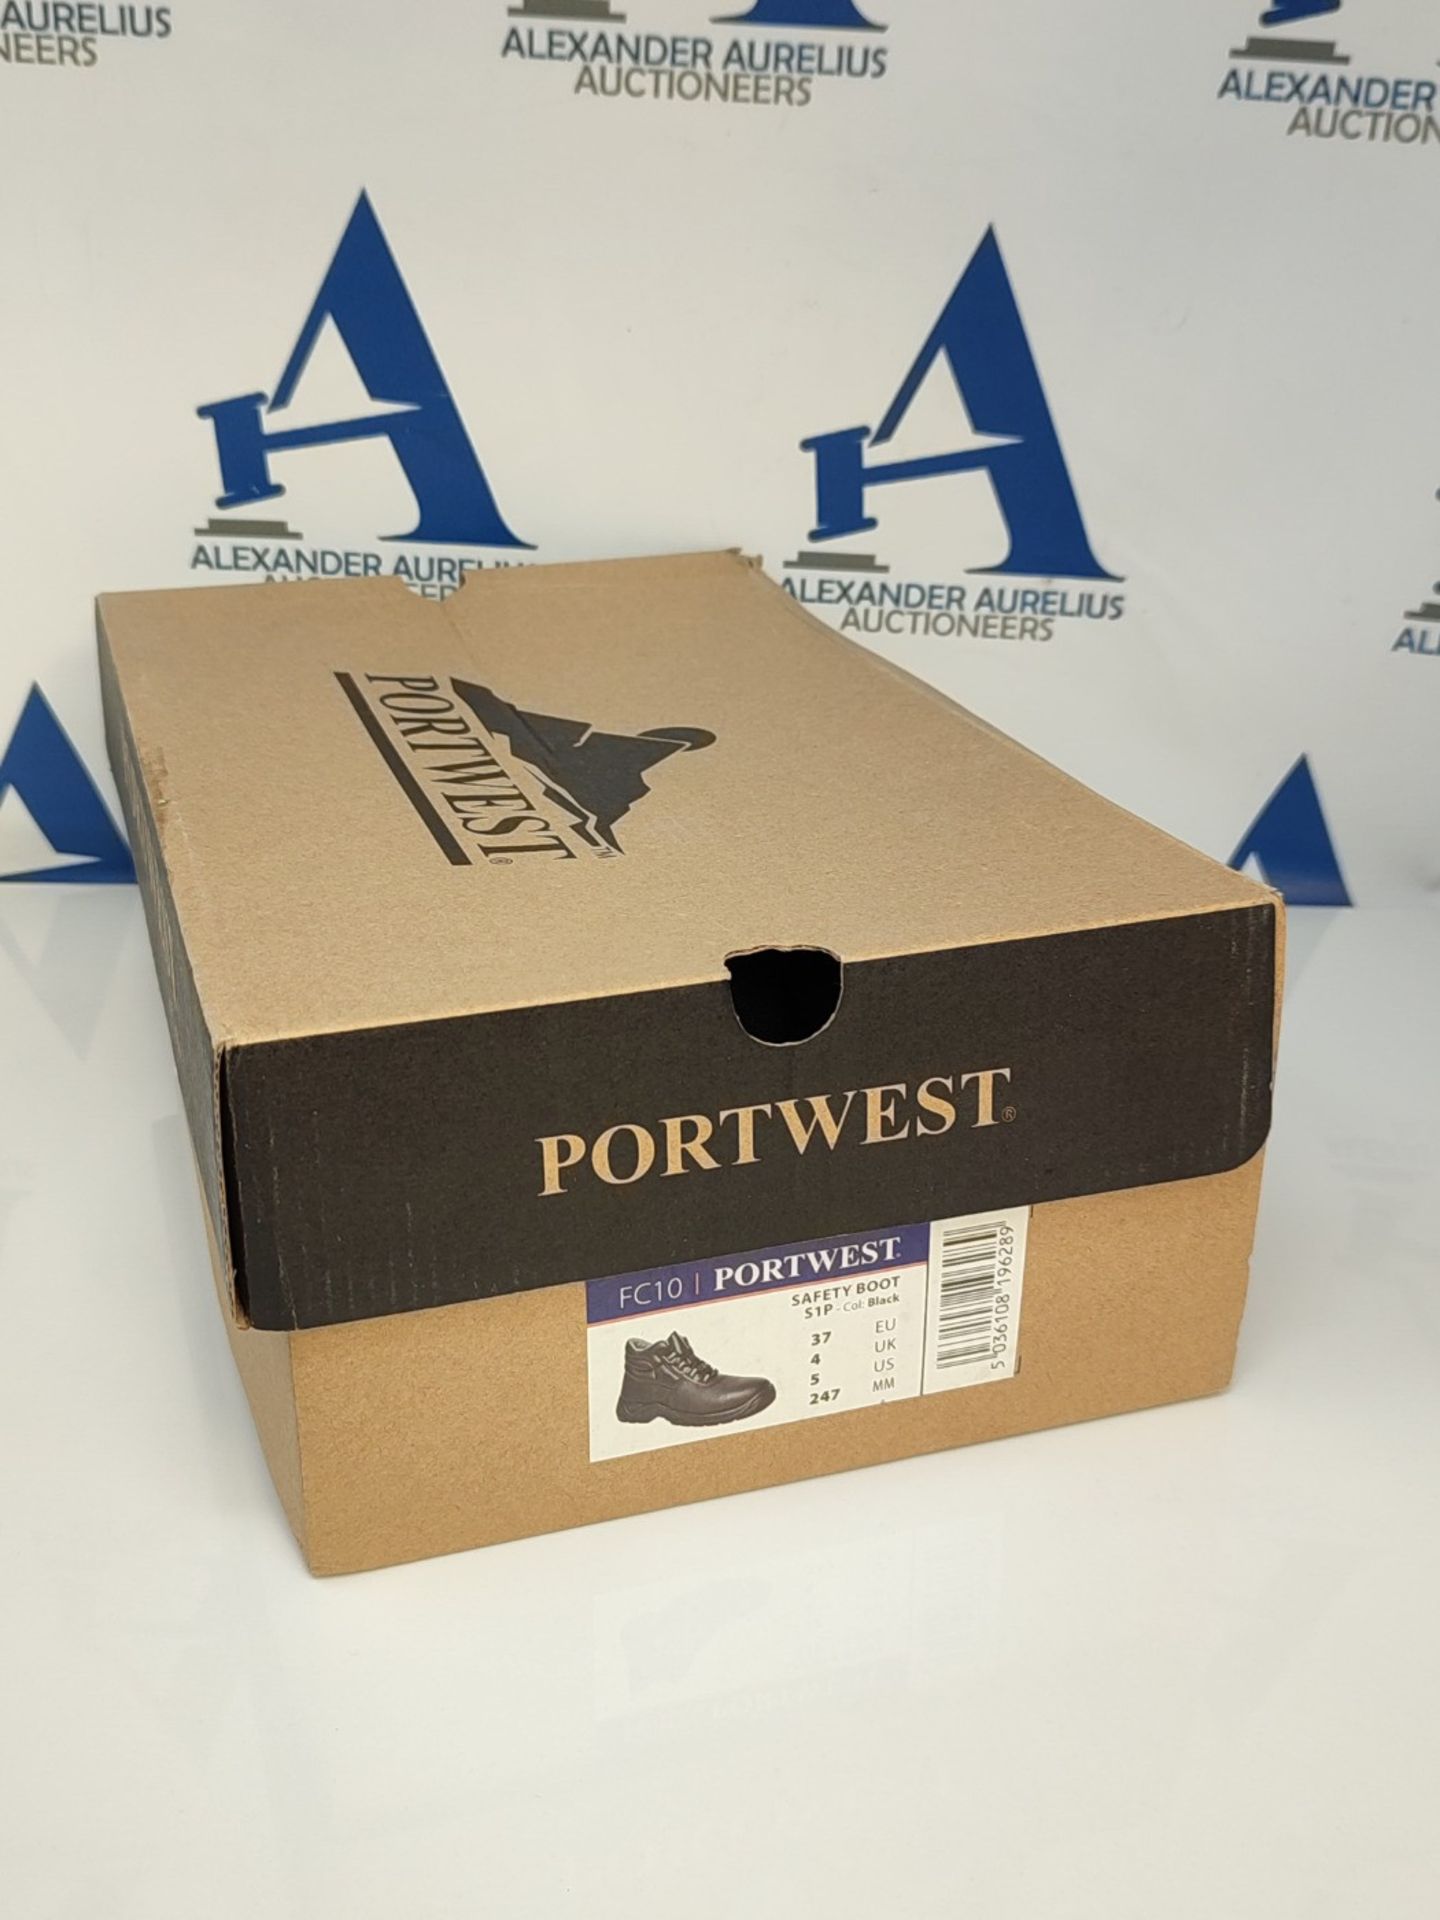 Portwest Portwest Compositelite Safety Boot S1P, Size: 37, Colour: Black, FC10BKR37 - Image 2 of 3